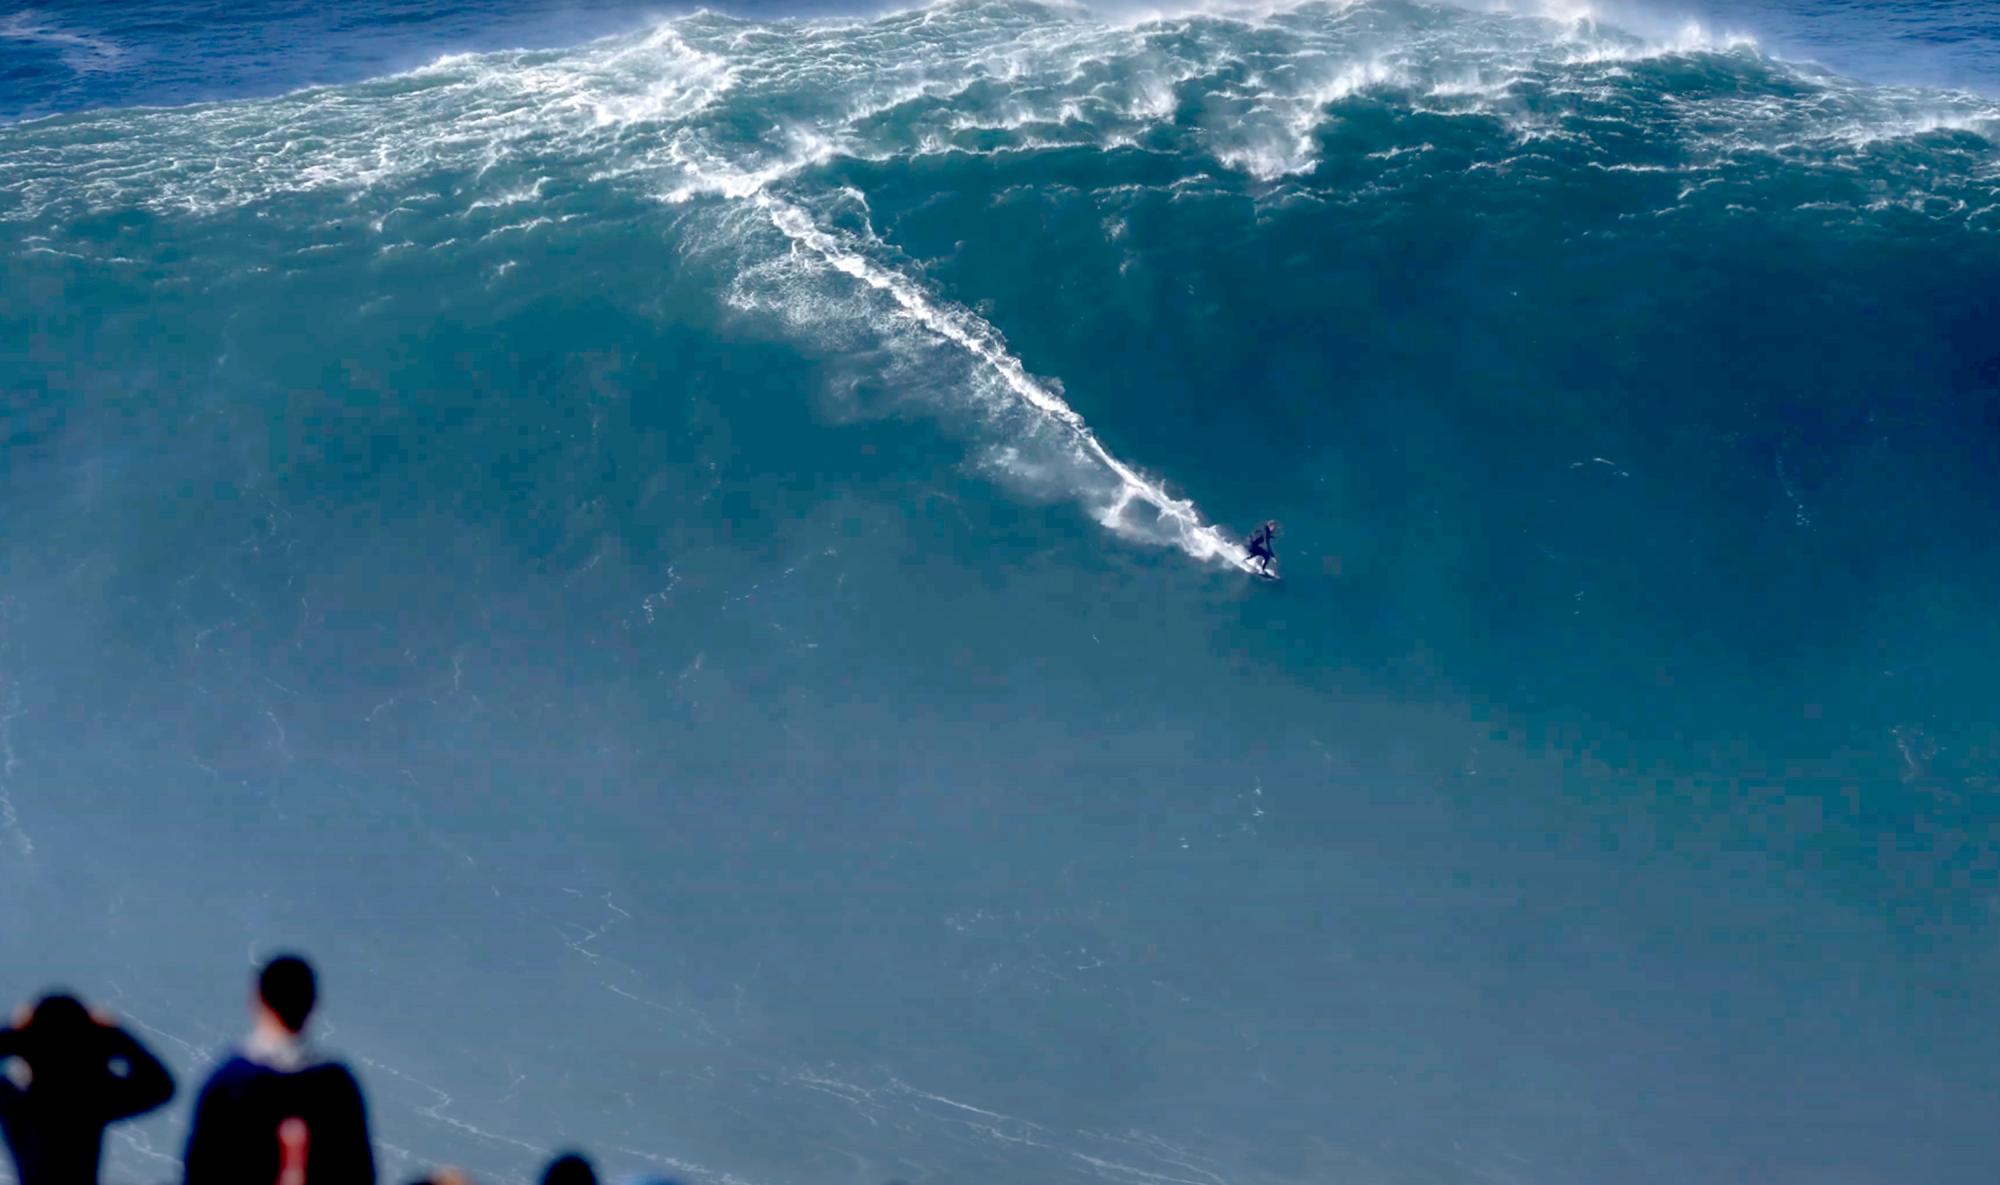 Dato Anuncio Senador Récord Guinness a la ola más grande del mundo surfeada en Nazaré